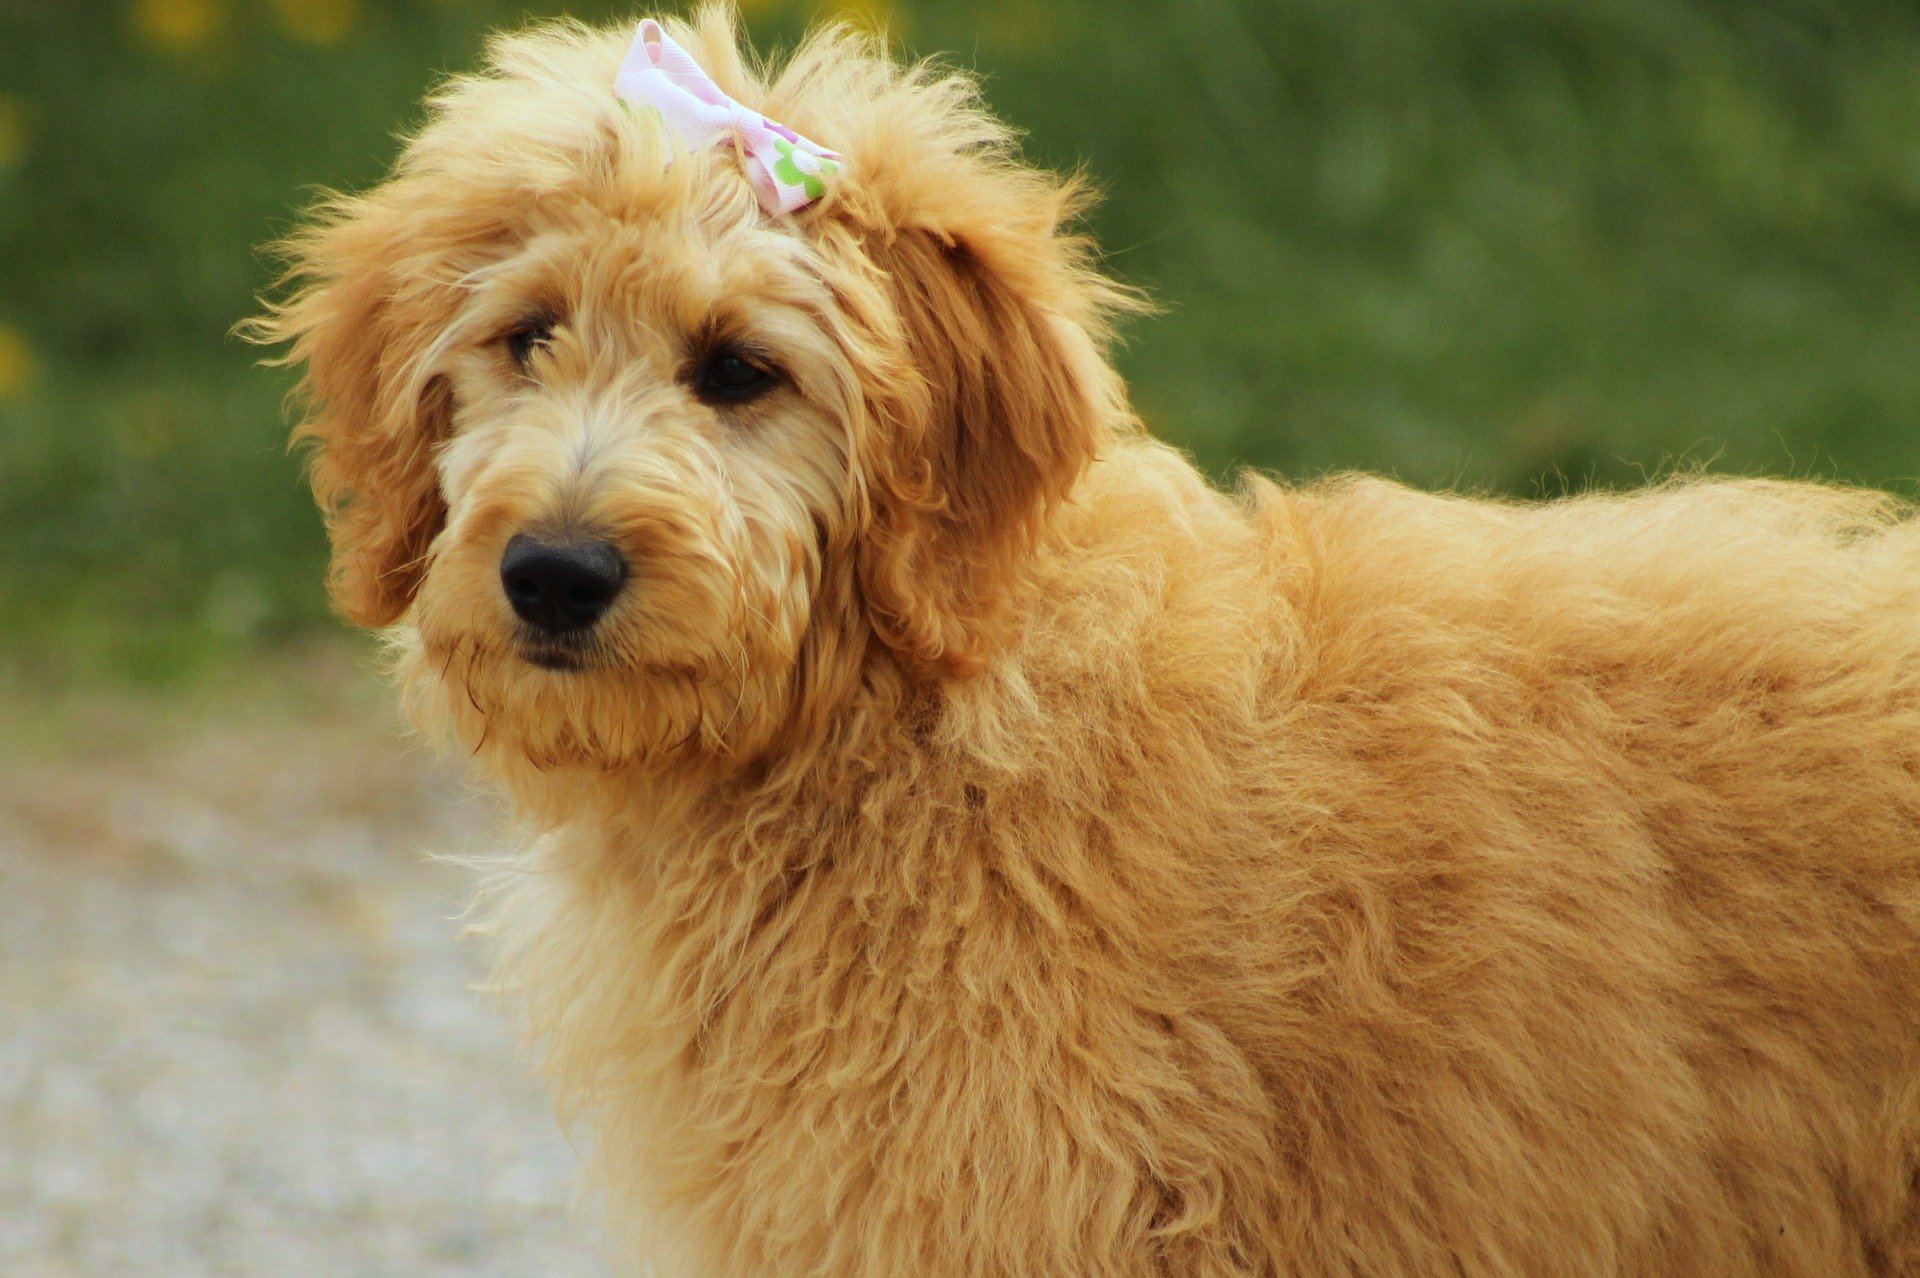 Goldendoodle jest psem powstałym z połączenia Golden retrievera z pudlem. Taka hybryda nie jest uznana przez Międzynarodową Federację Kynologiczną.